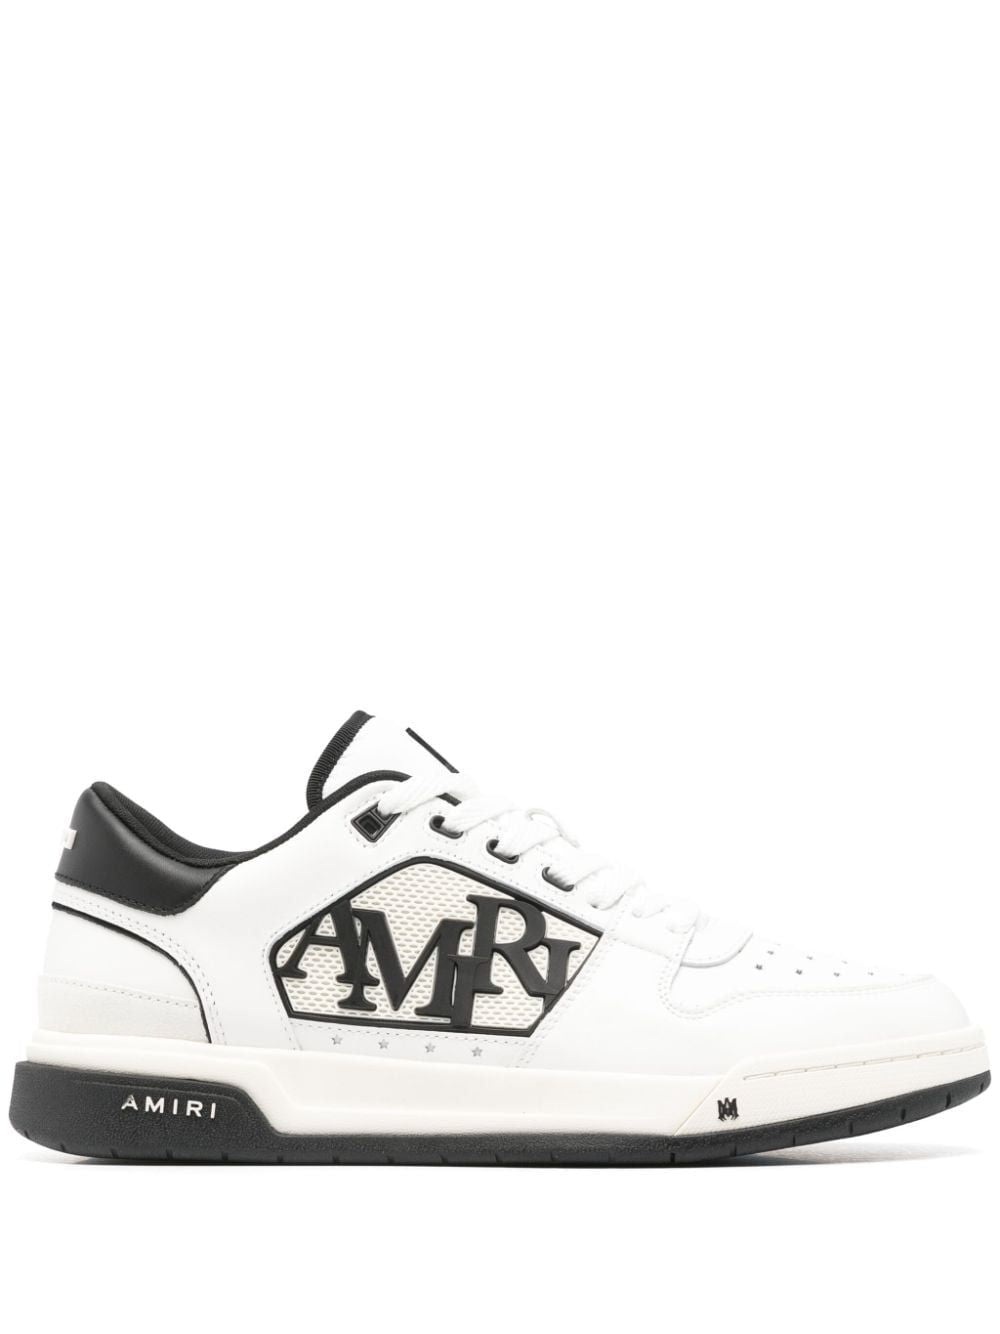 AMIRI Black Low-top Sneakers for Men - Fall/Winter 24